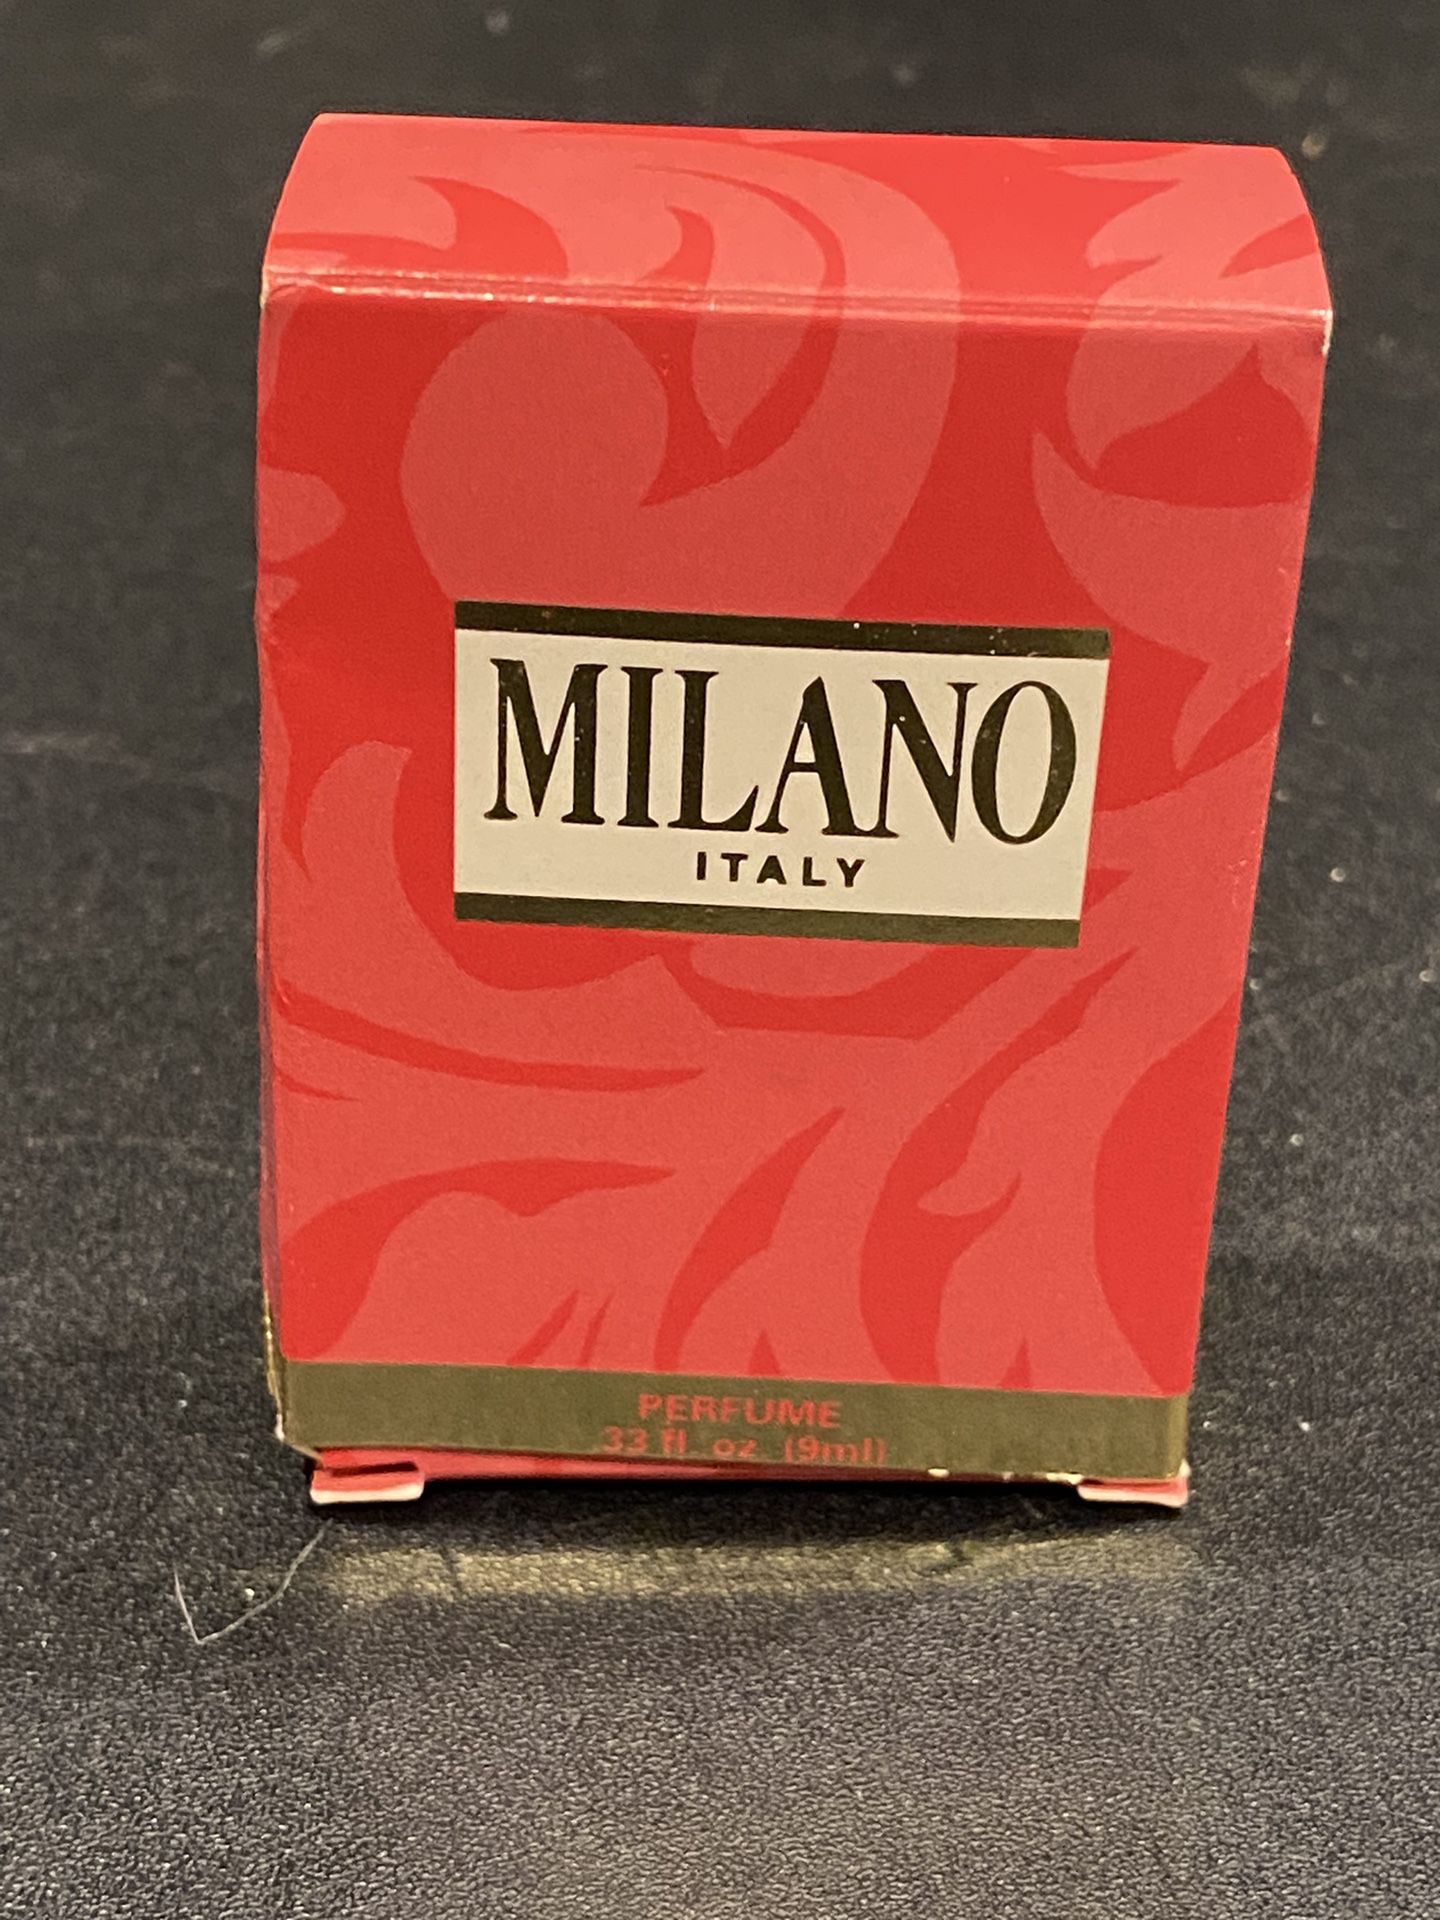 Milano Italy Perfume Splash 0.33 fl.oz/9 ml Vintage New with Open Box 